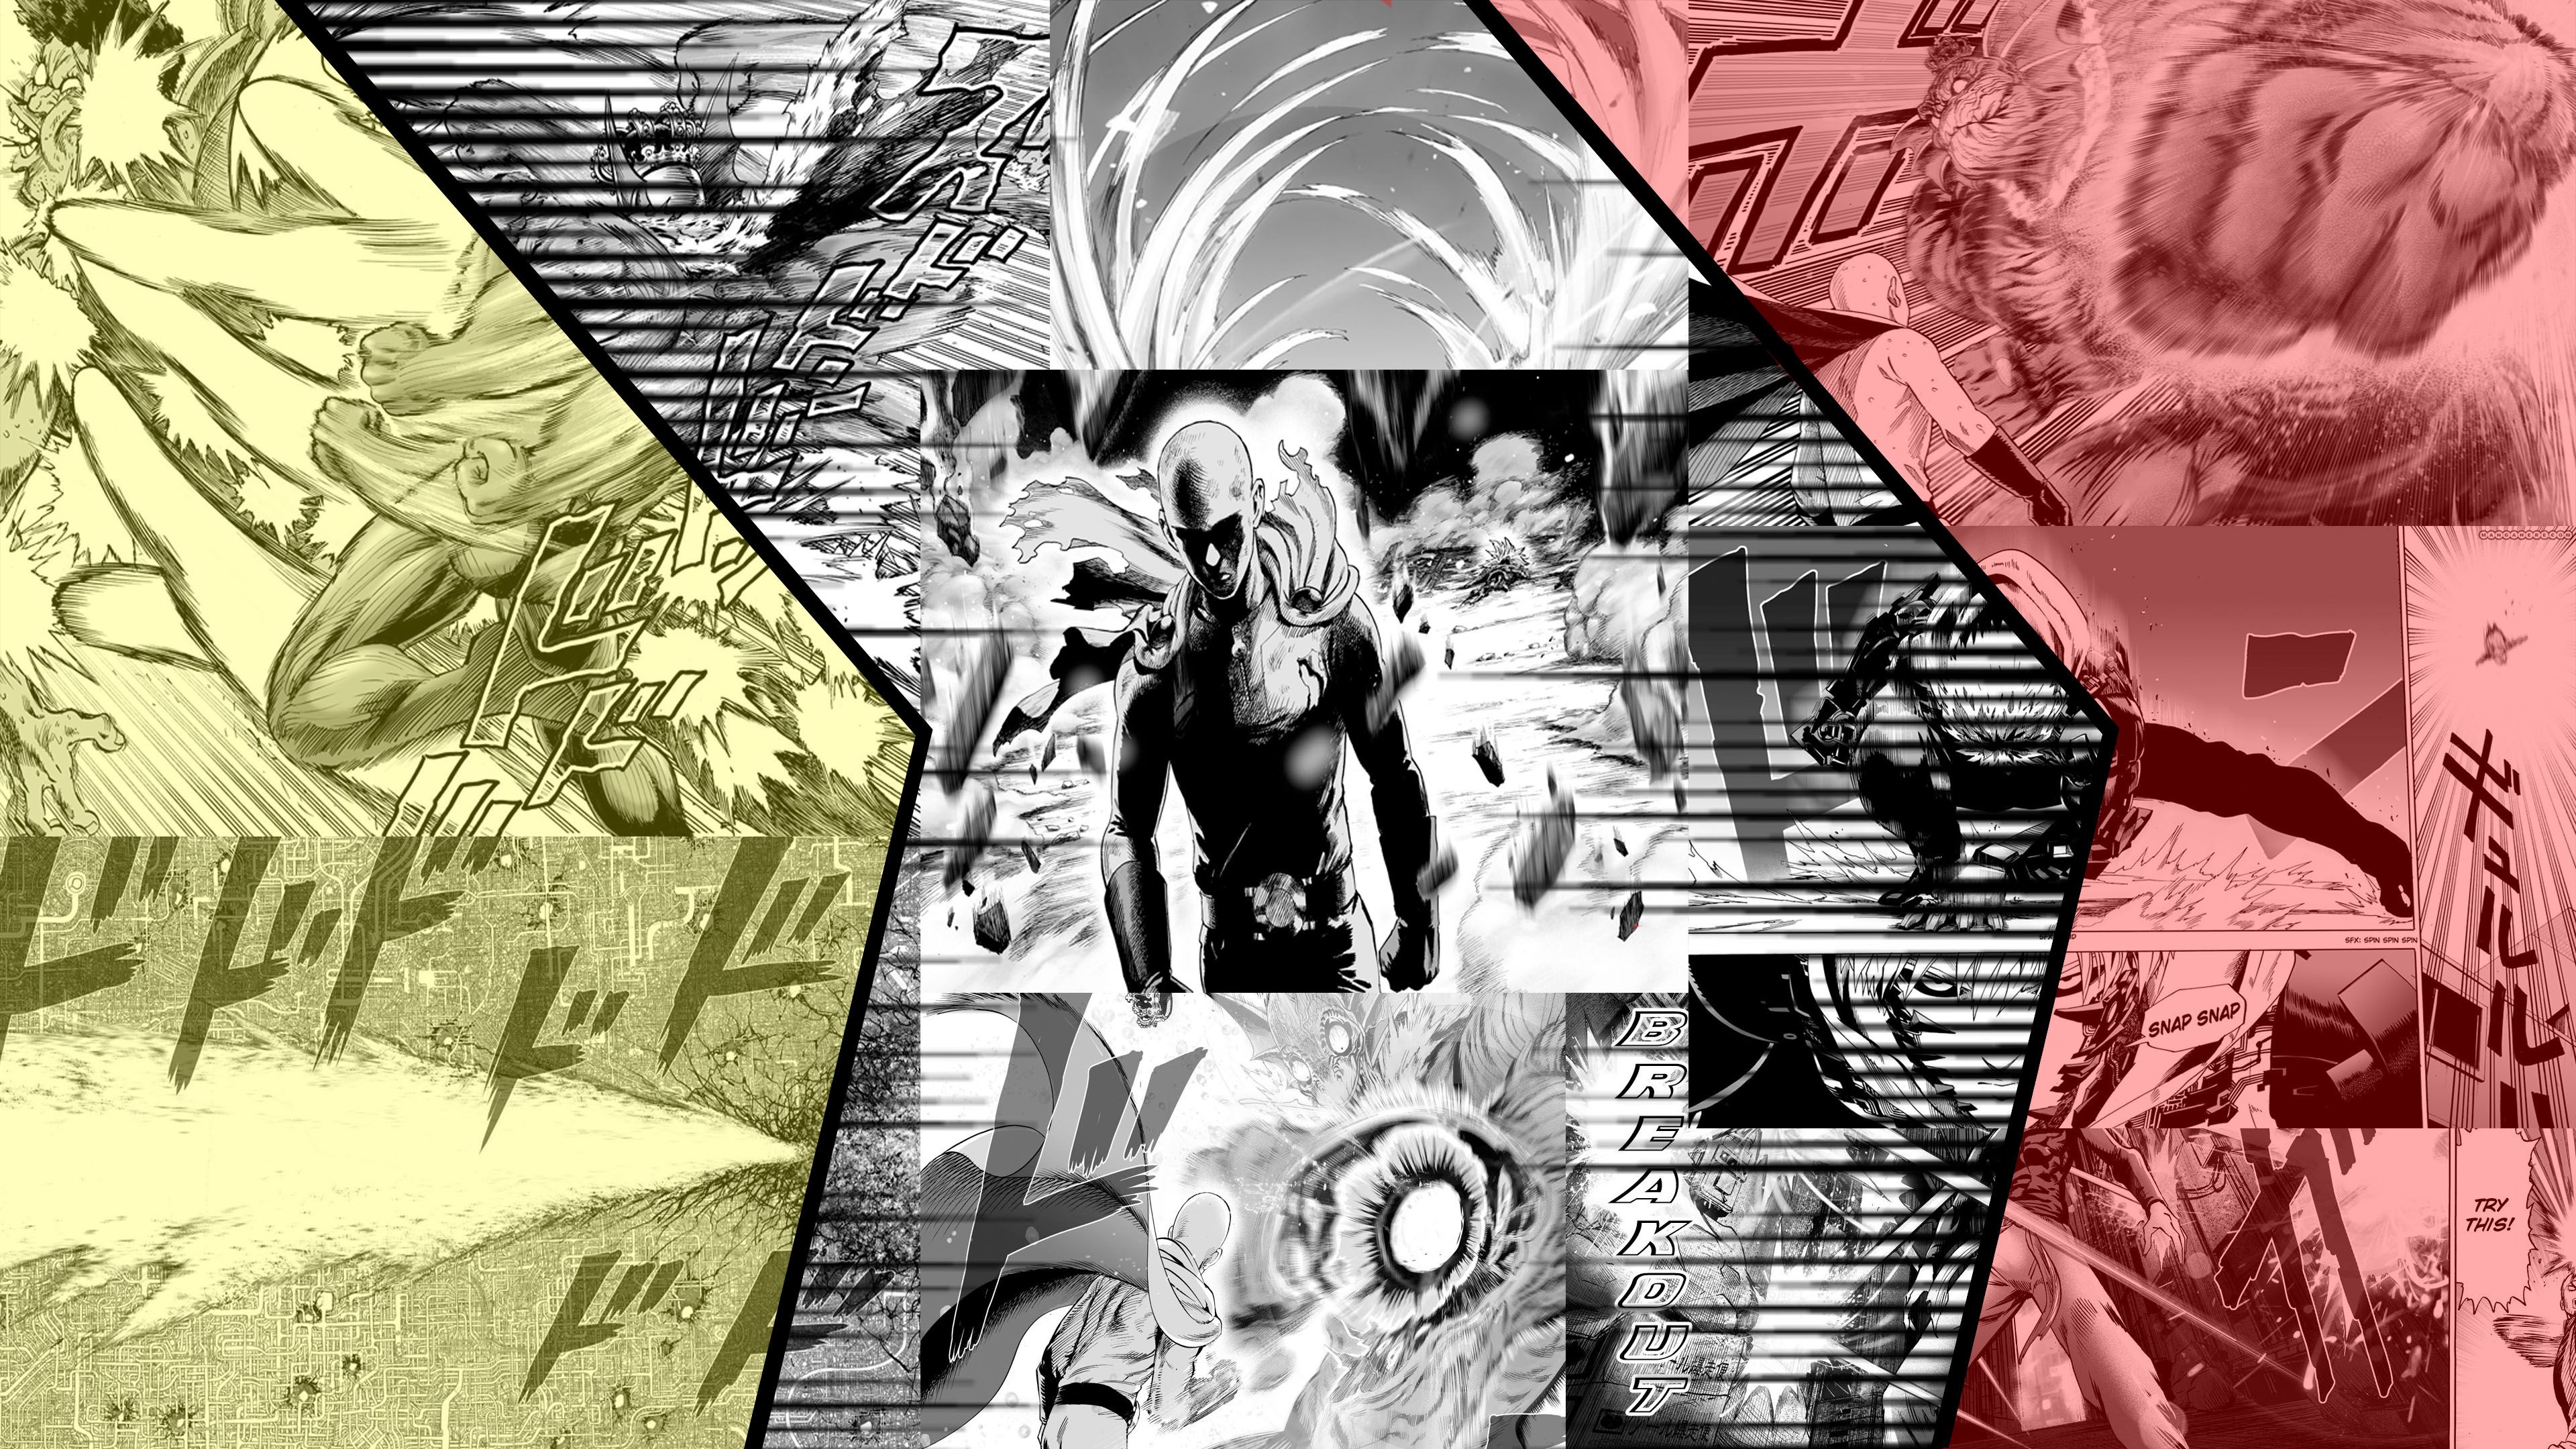 One-Punch Man #Saitama #manga #1080P #wallpaper #hdwallpaper